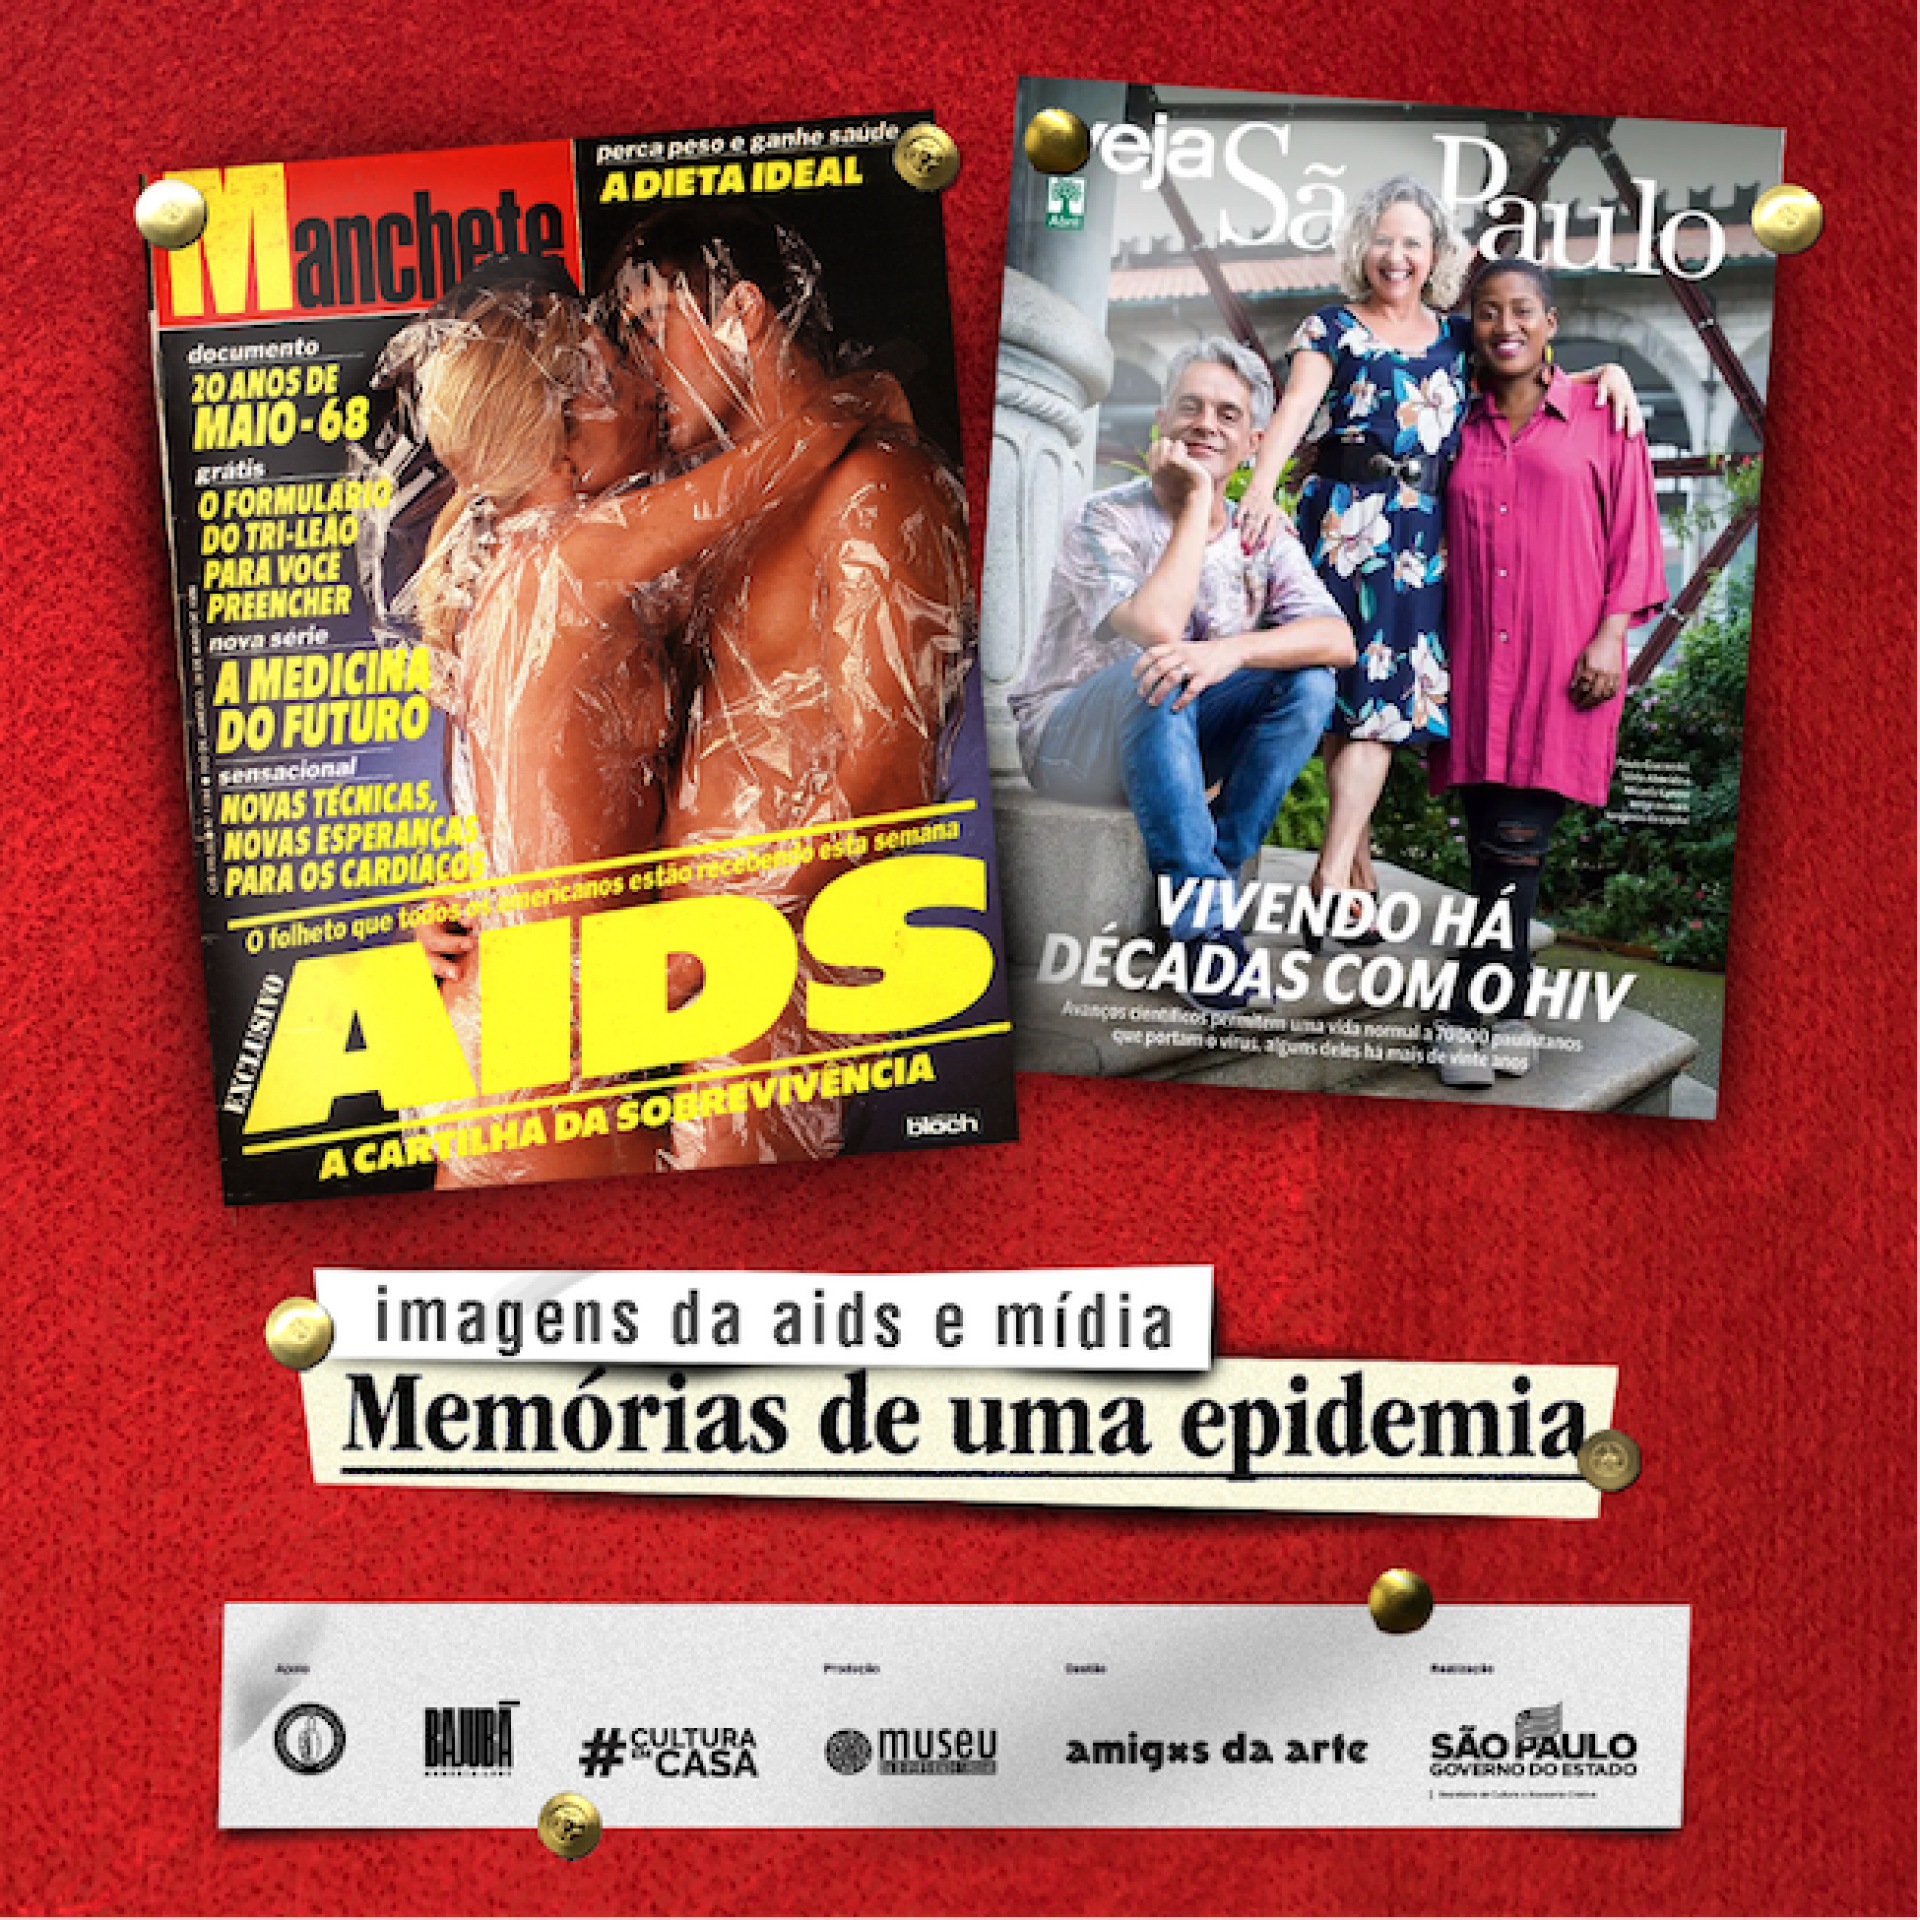 “Memórias de uma epidemia” relembra história da aids